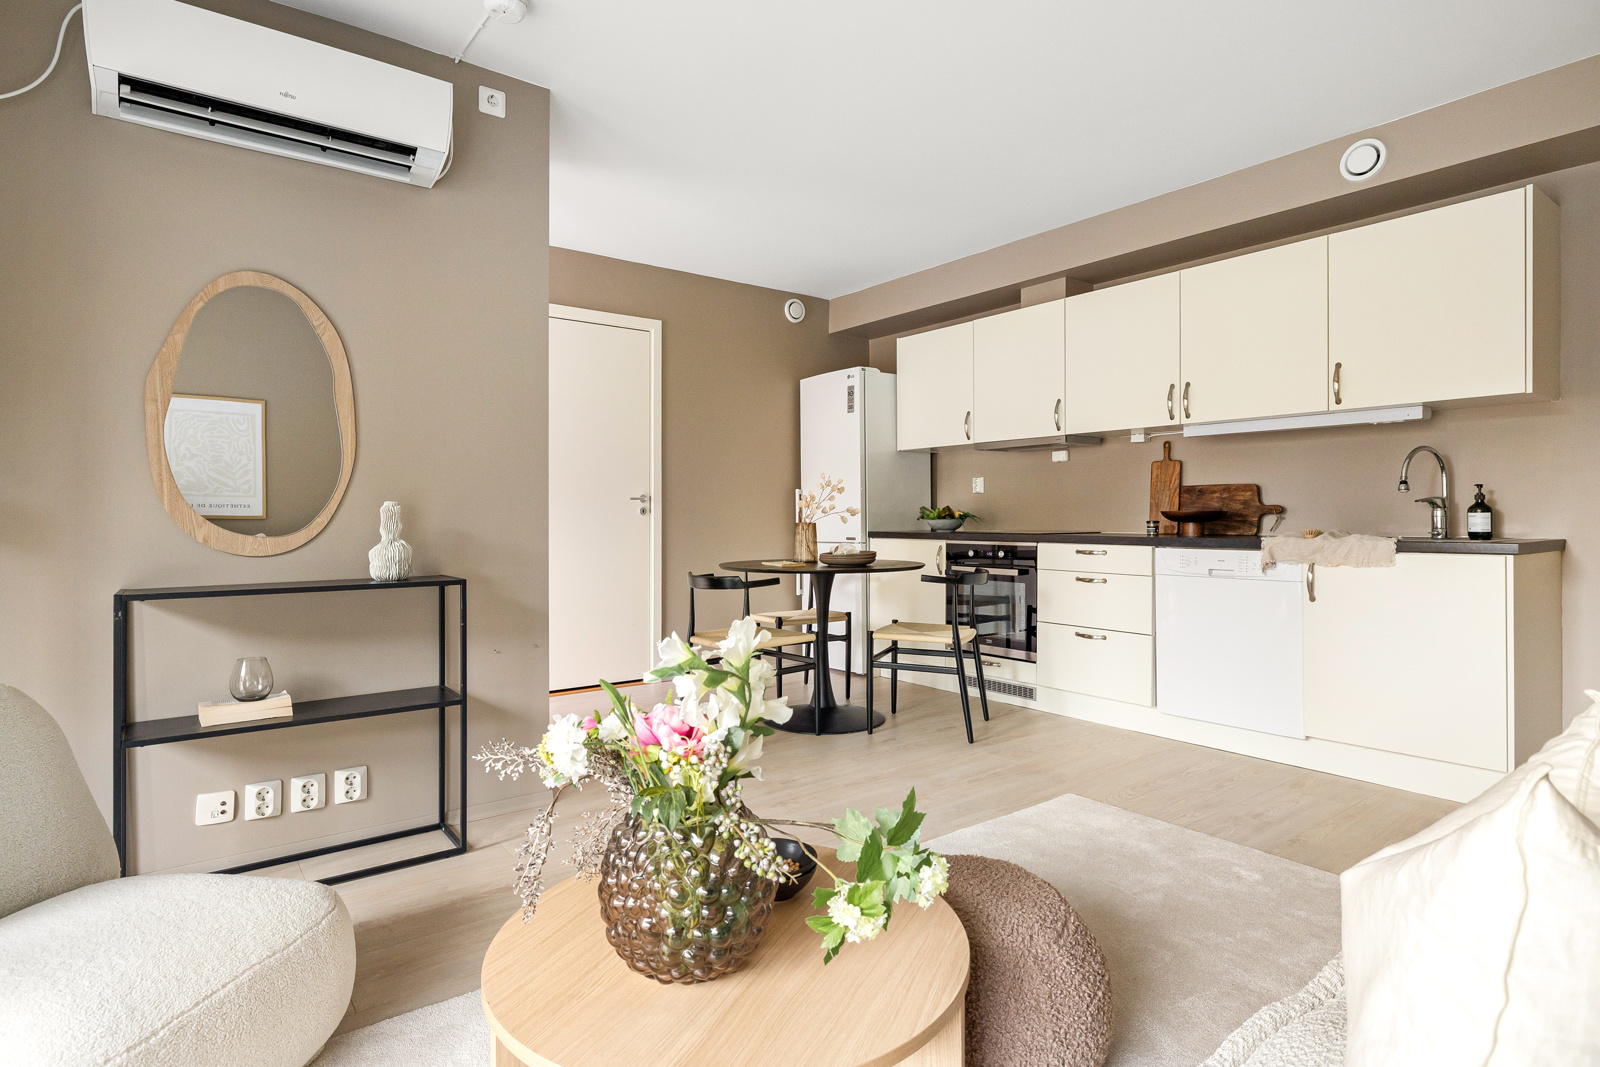 Velkommen til Storestraumen 91G - perfekt leilighet fra 2021 for førstegangskjøpere